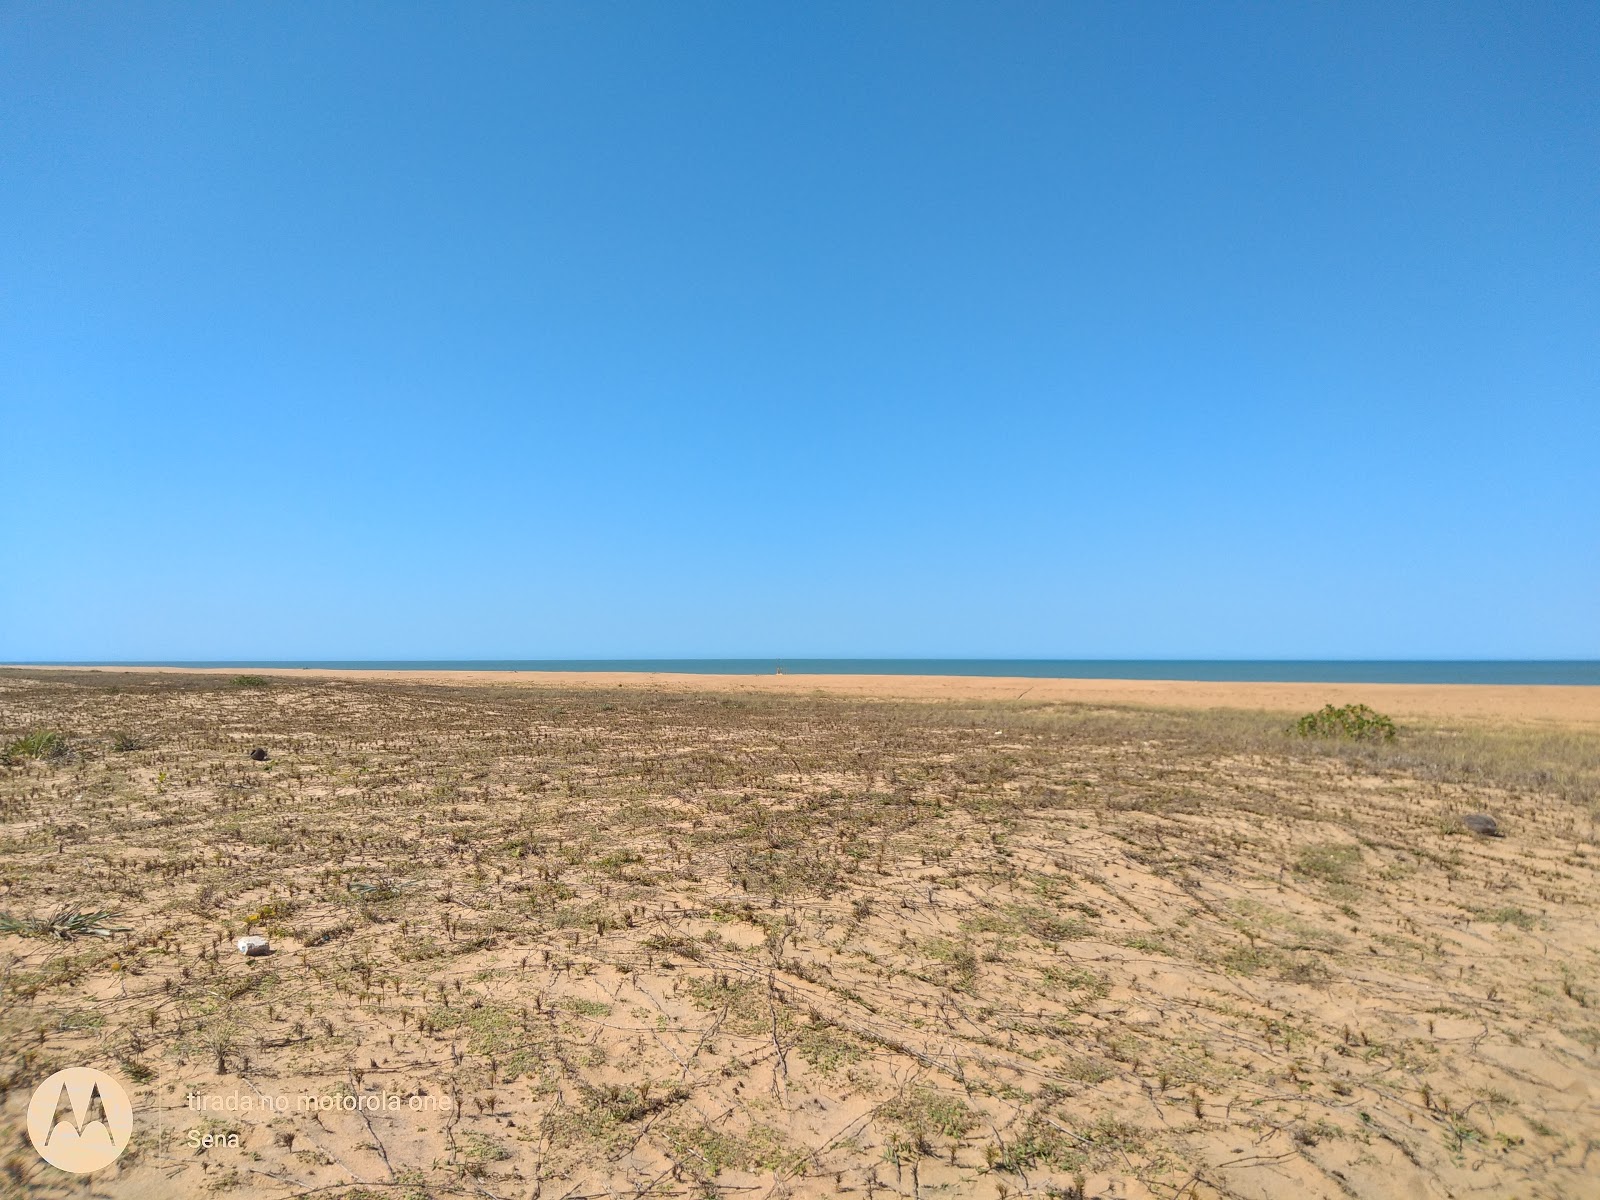 雷根西亚海滩的照片 带有明亮的沙子表面